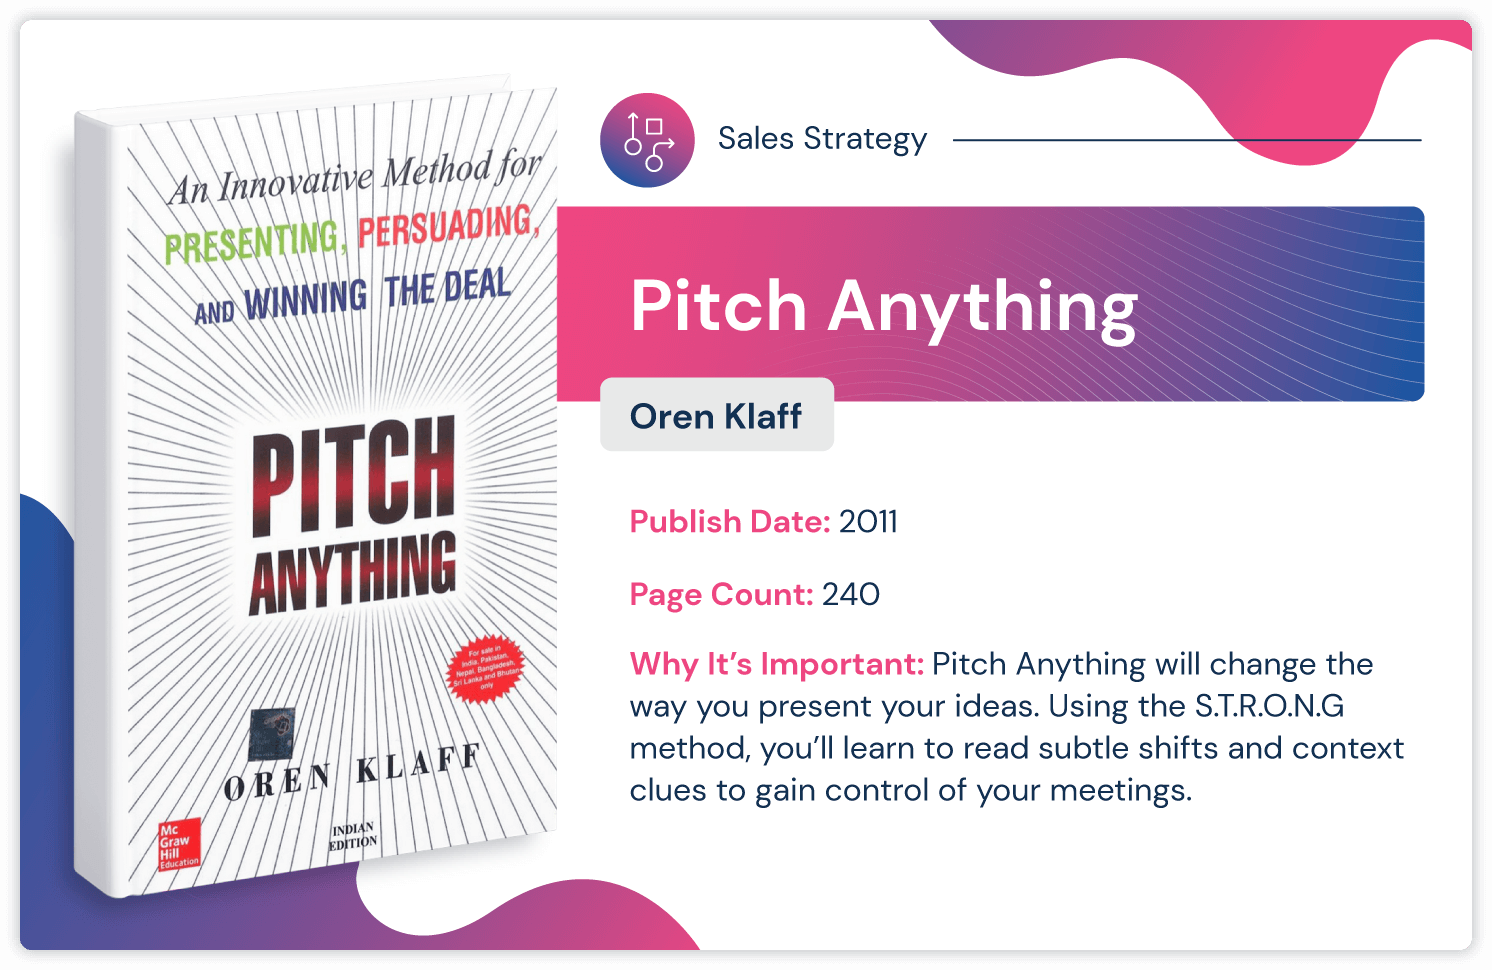 كتاب إستراتيجية المبيعات "Pitch Anything" من تأليف Oren Klaff ، والذي نُشر في عام 2011 ويتألف من 240 صفحة.